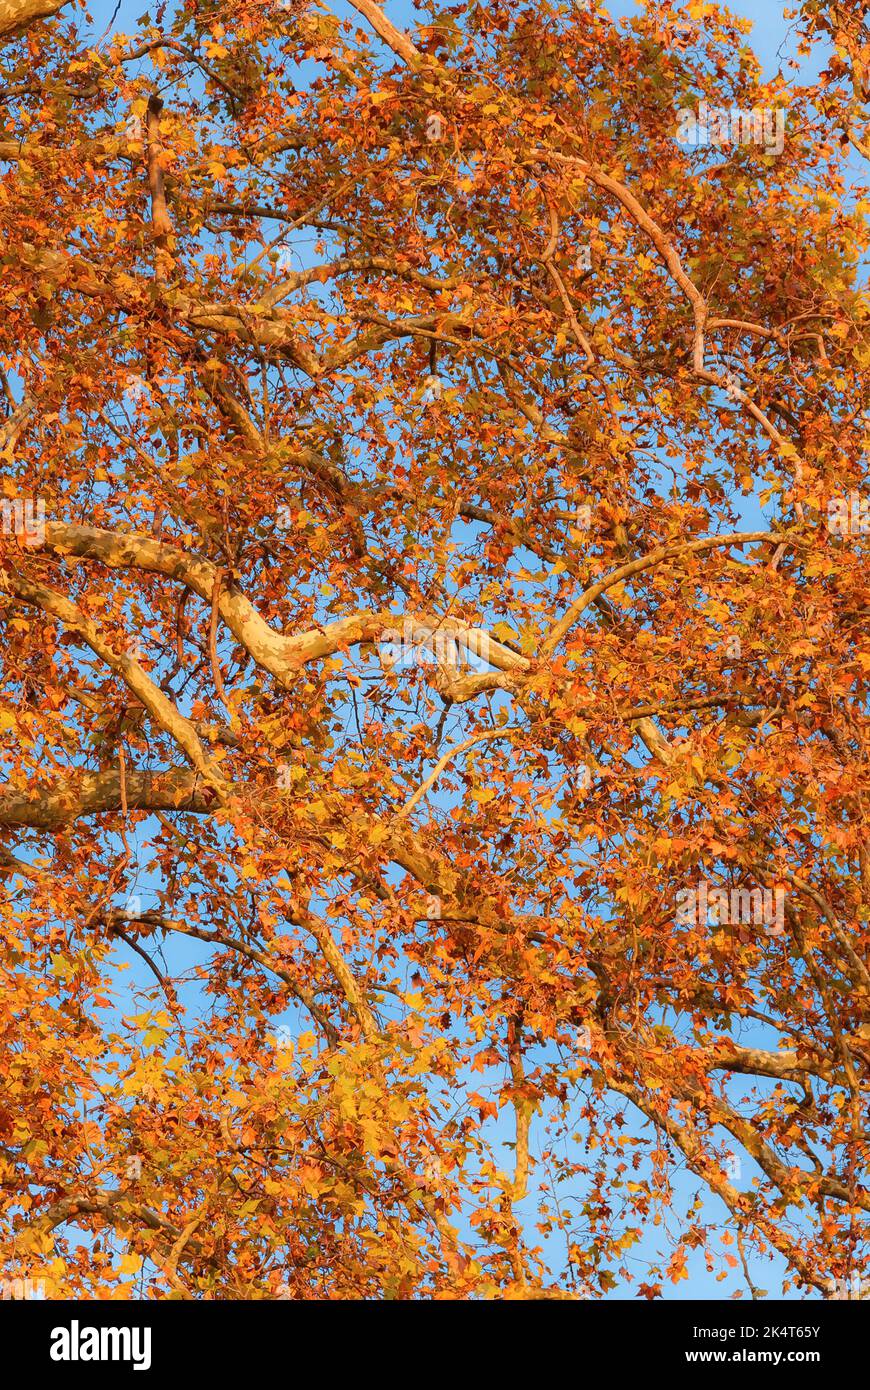 Herbstlicher und belaubter Hintergrund. Der Herbst kommt, die Platanenblätter werden von grün zu gelb und braun Stockfoto